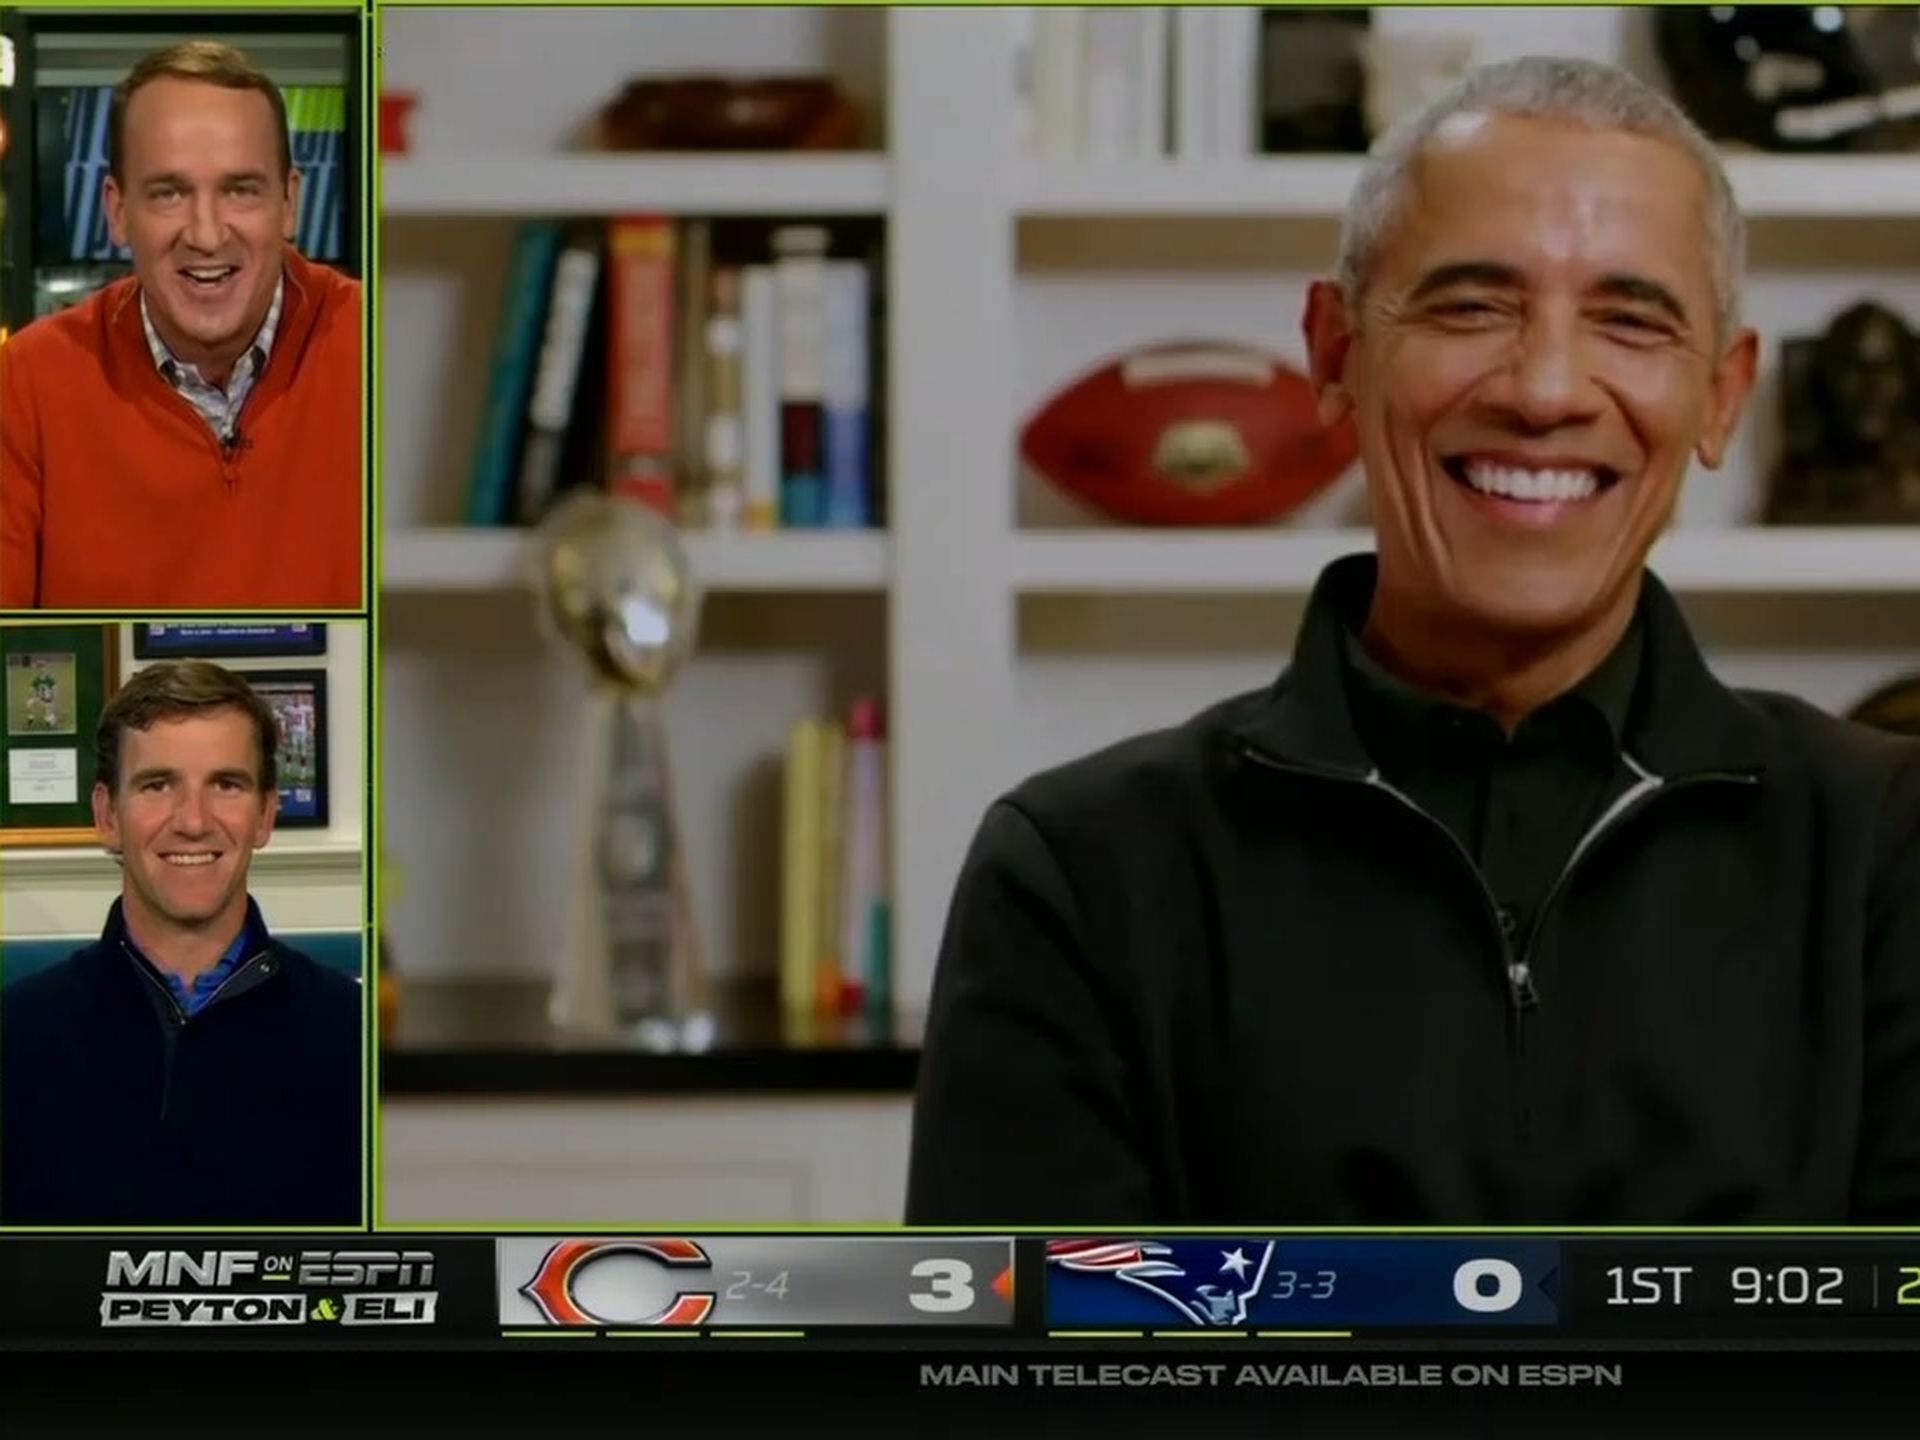 How ESPN's Manningcast landed Obama